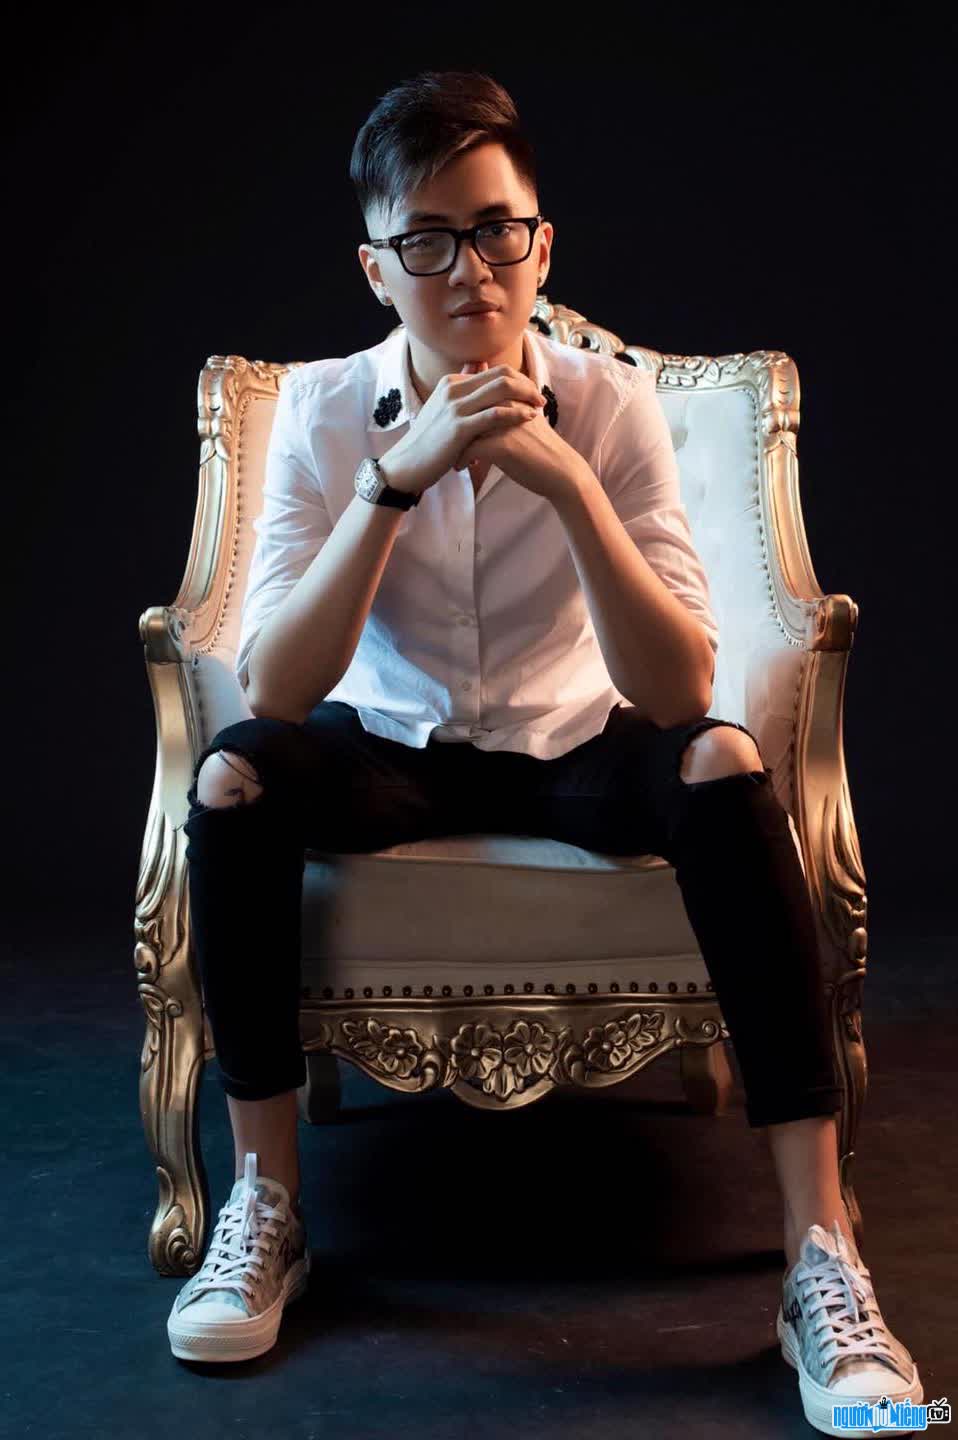 Hình ảnh DJ Thái Hoàng - một gương mặt quen thuộc của những người yêu thích dòng nhạc EDM